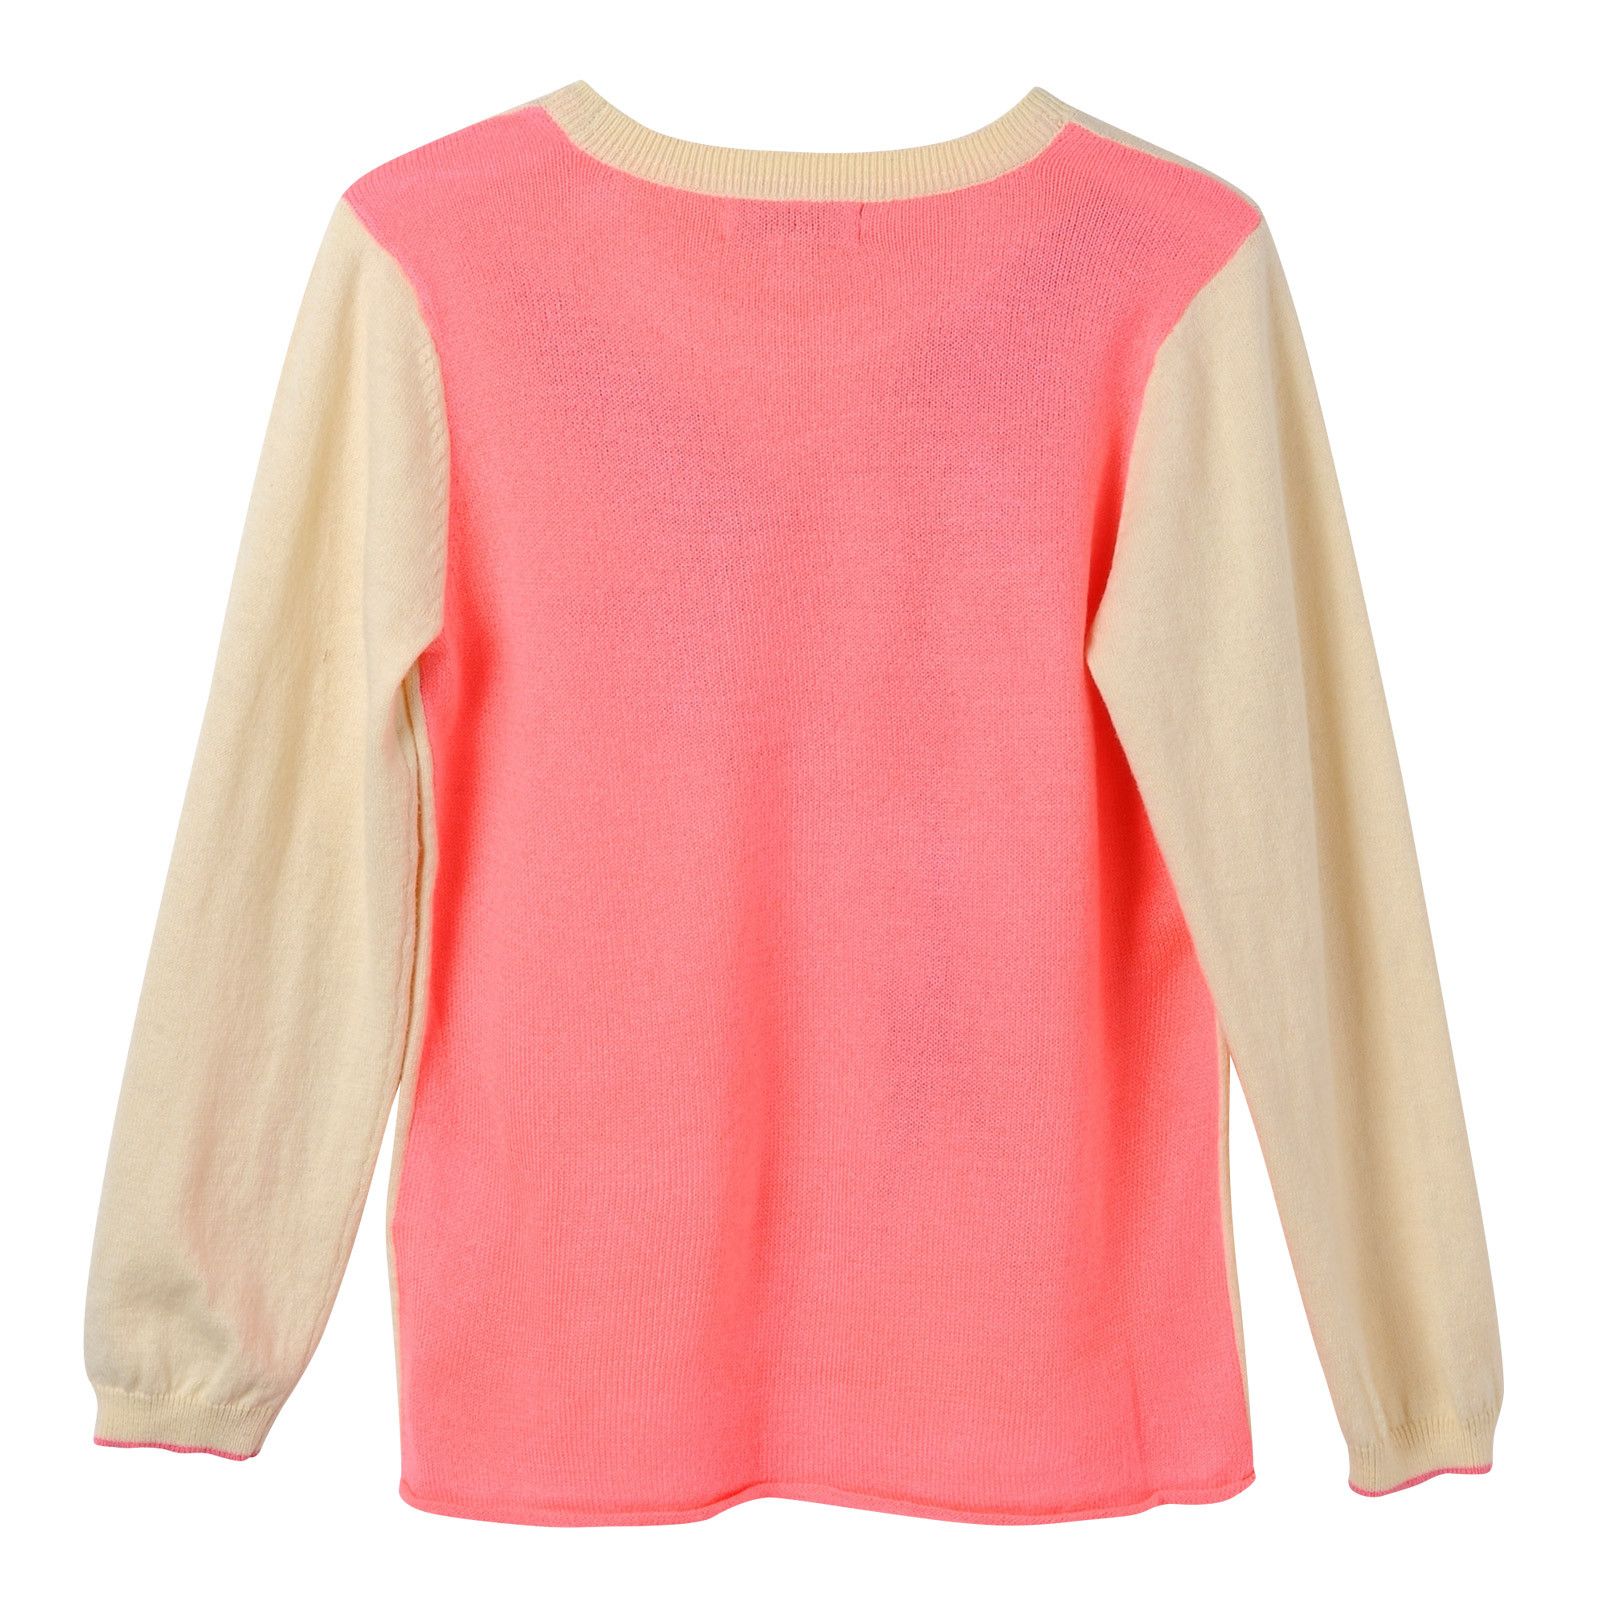 Girls Beige Knitted Bird Intarsia Trims Sweater - CÉMAROSE | Children's Fashion Store - 2